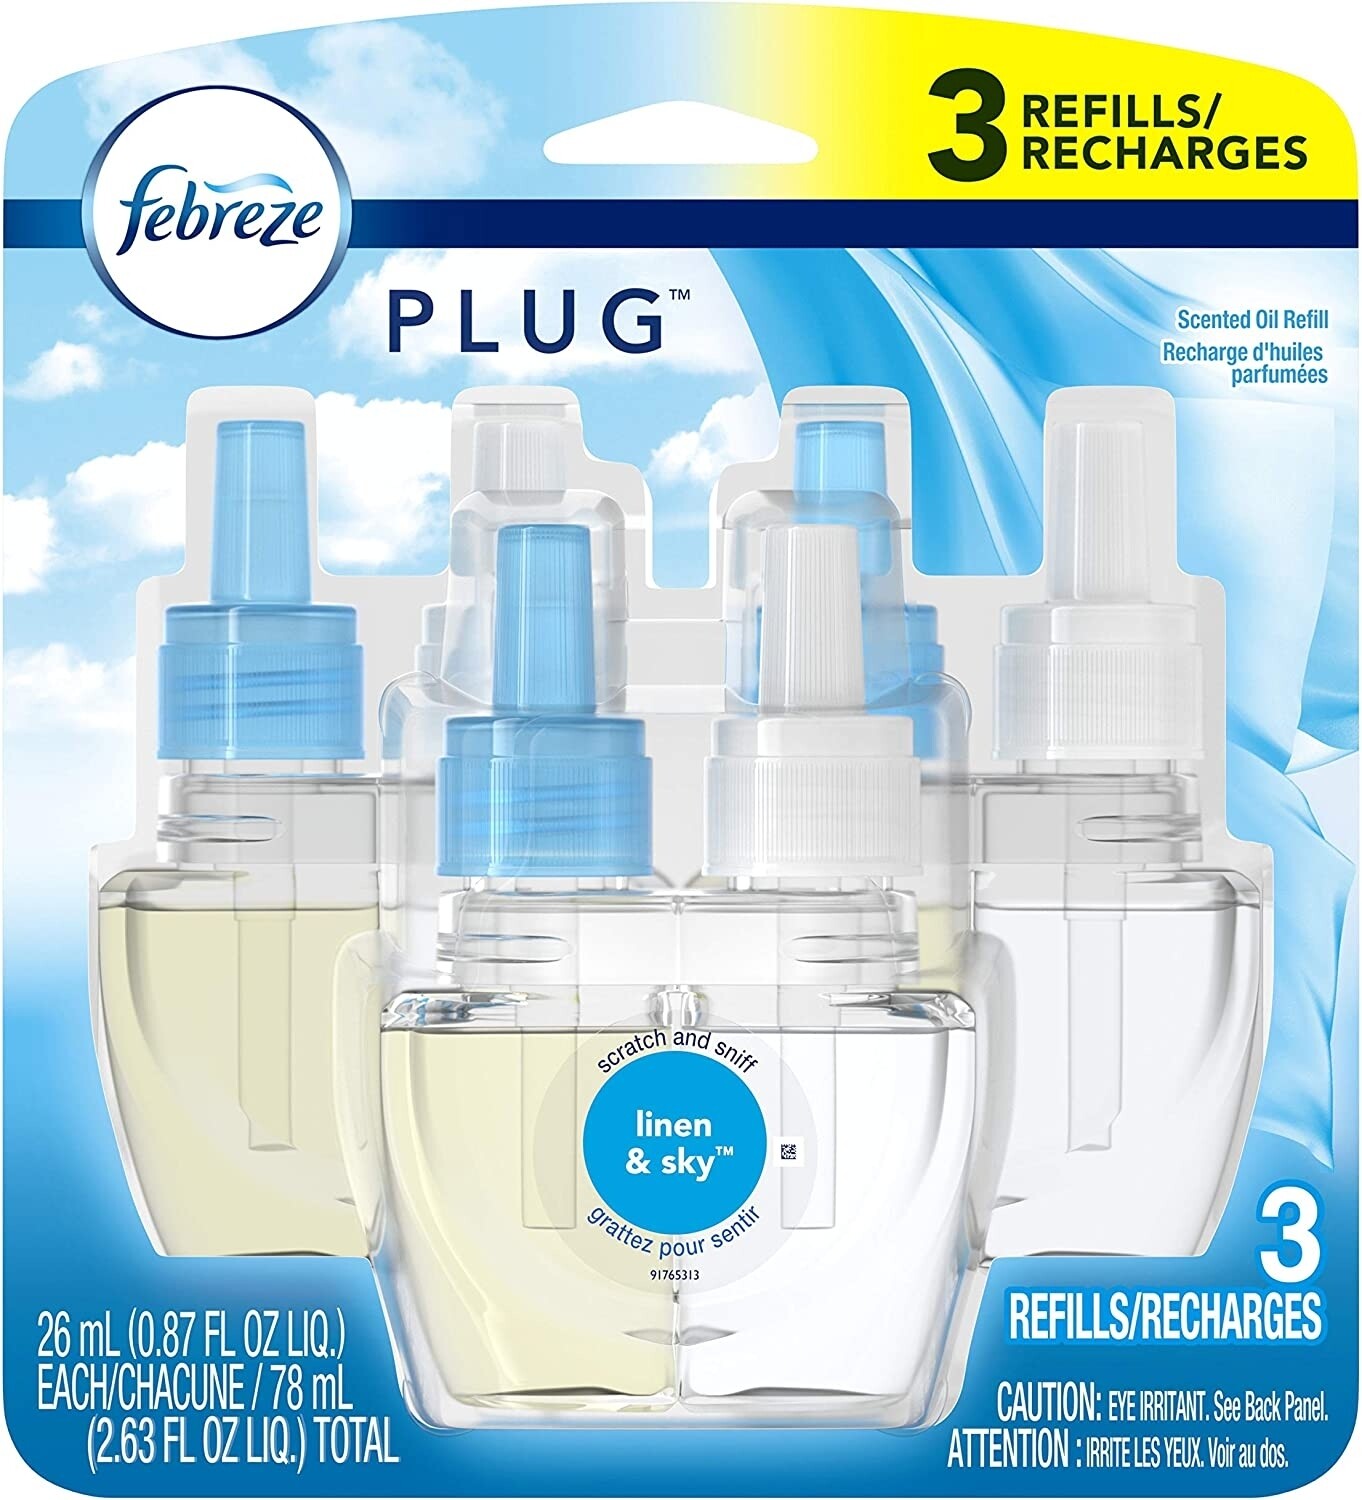 Febreze Home Fragrance Refill per bottle- linen and sky 